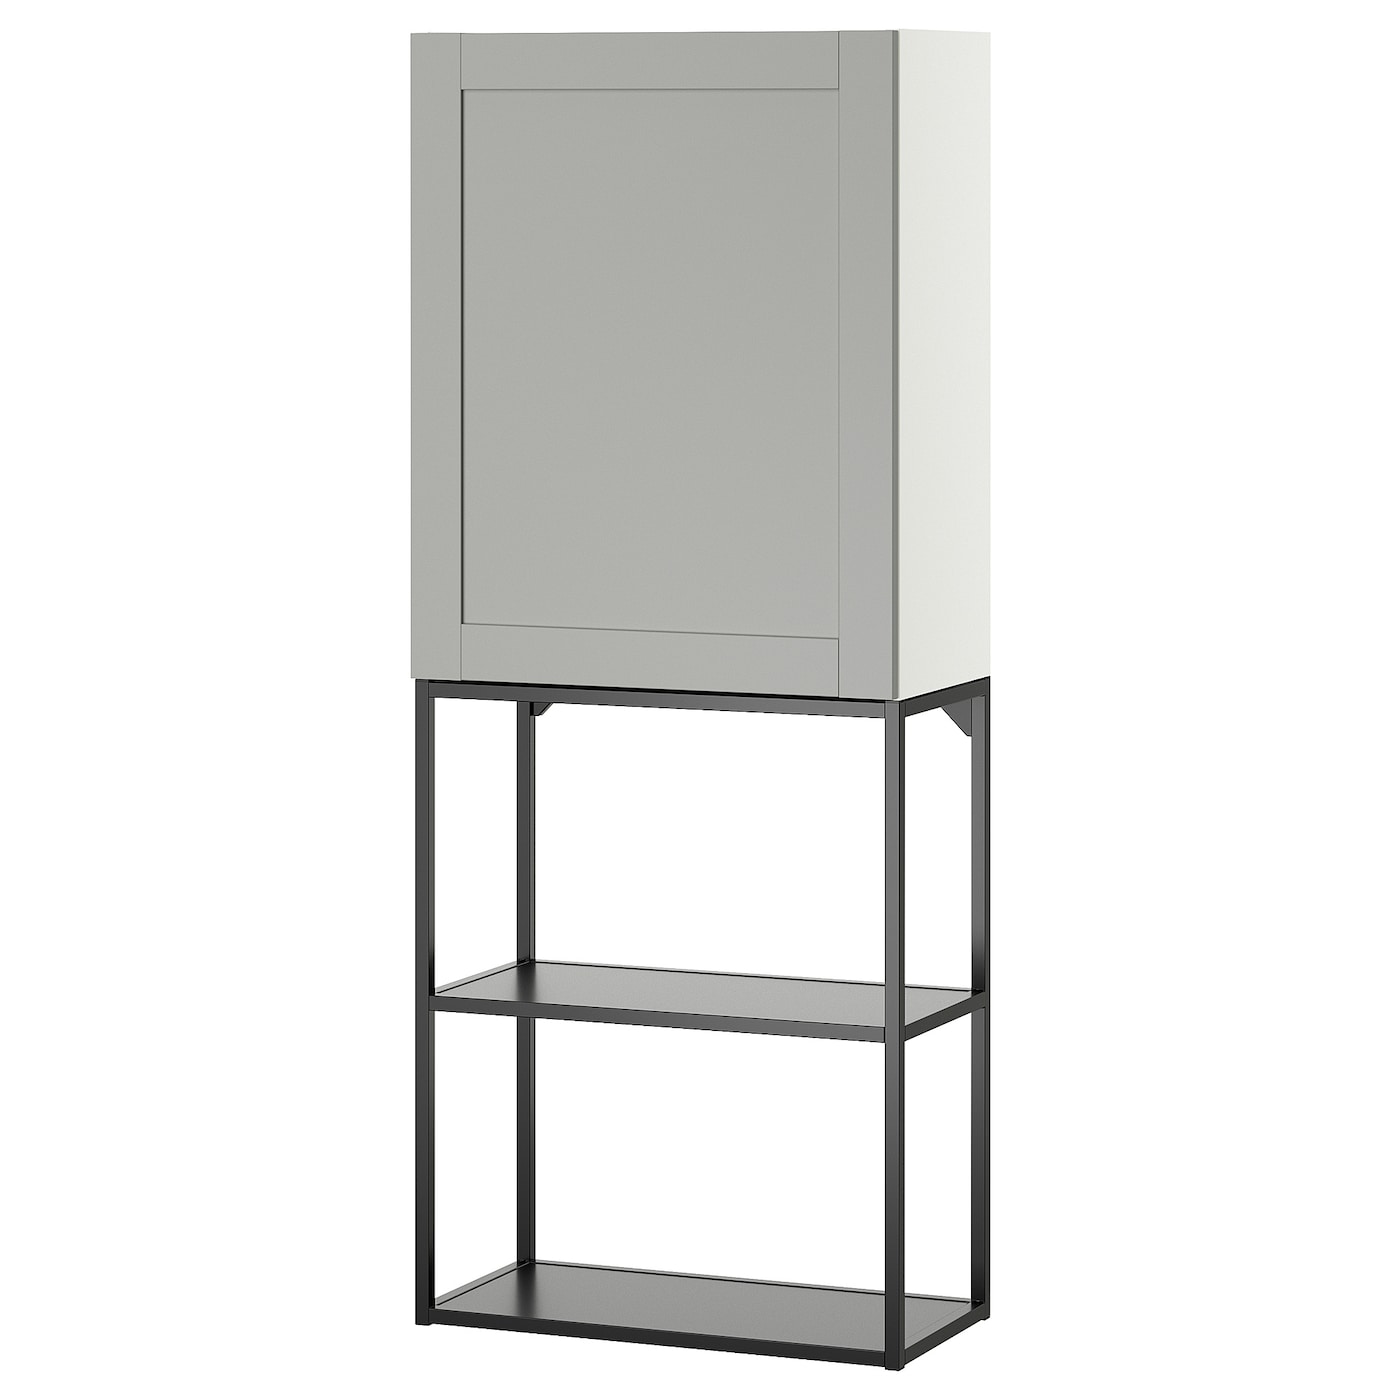 Навесной шкаф - ENHET IKEA/ ЭНХЕТ ИКЕА,   60x32x150 см, черный/серый